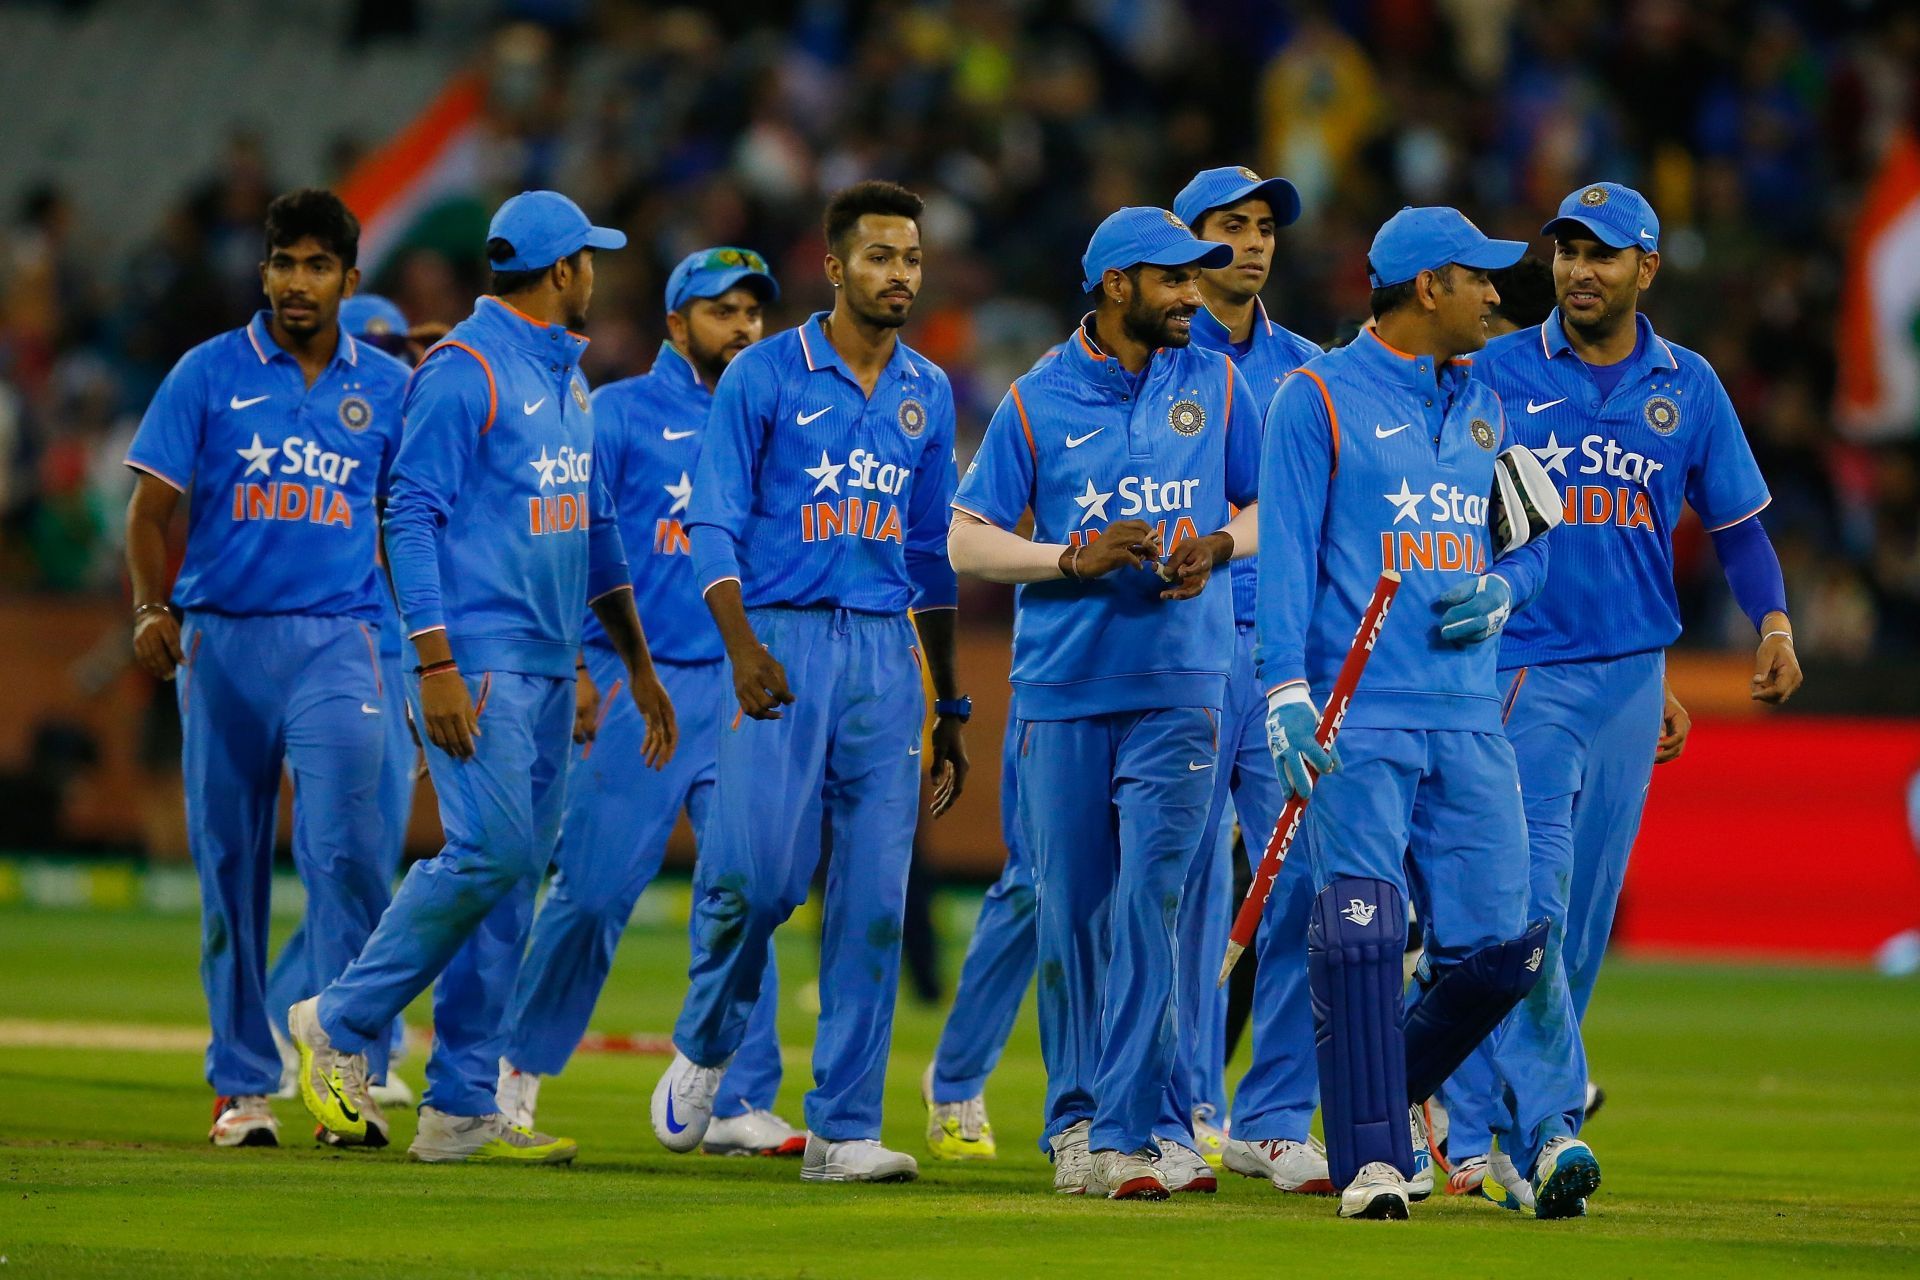 Australia v India - Game 2 in Melbourne 2016